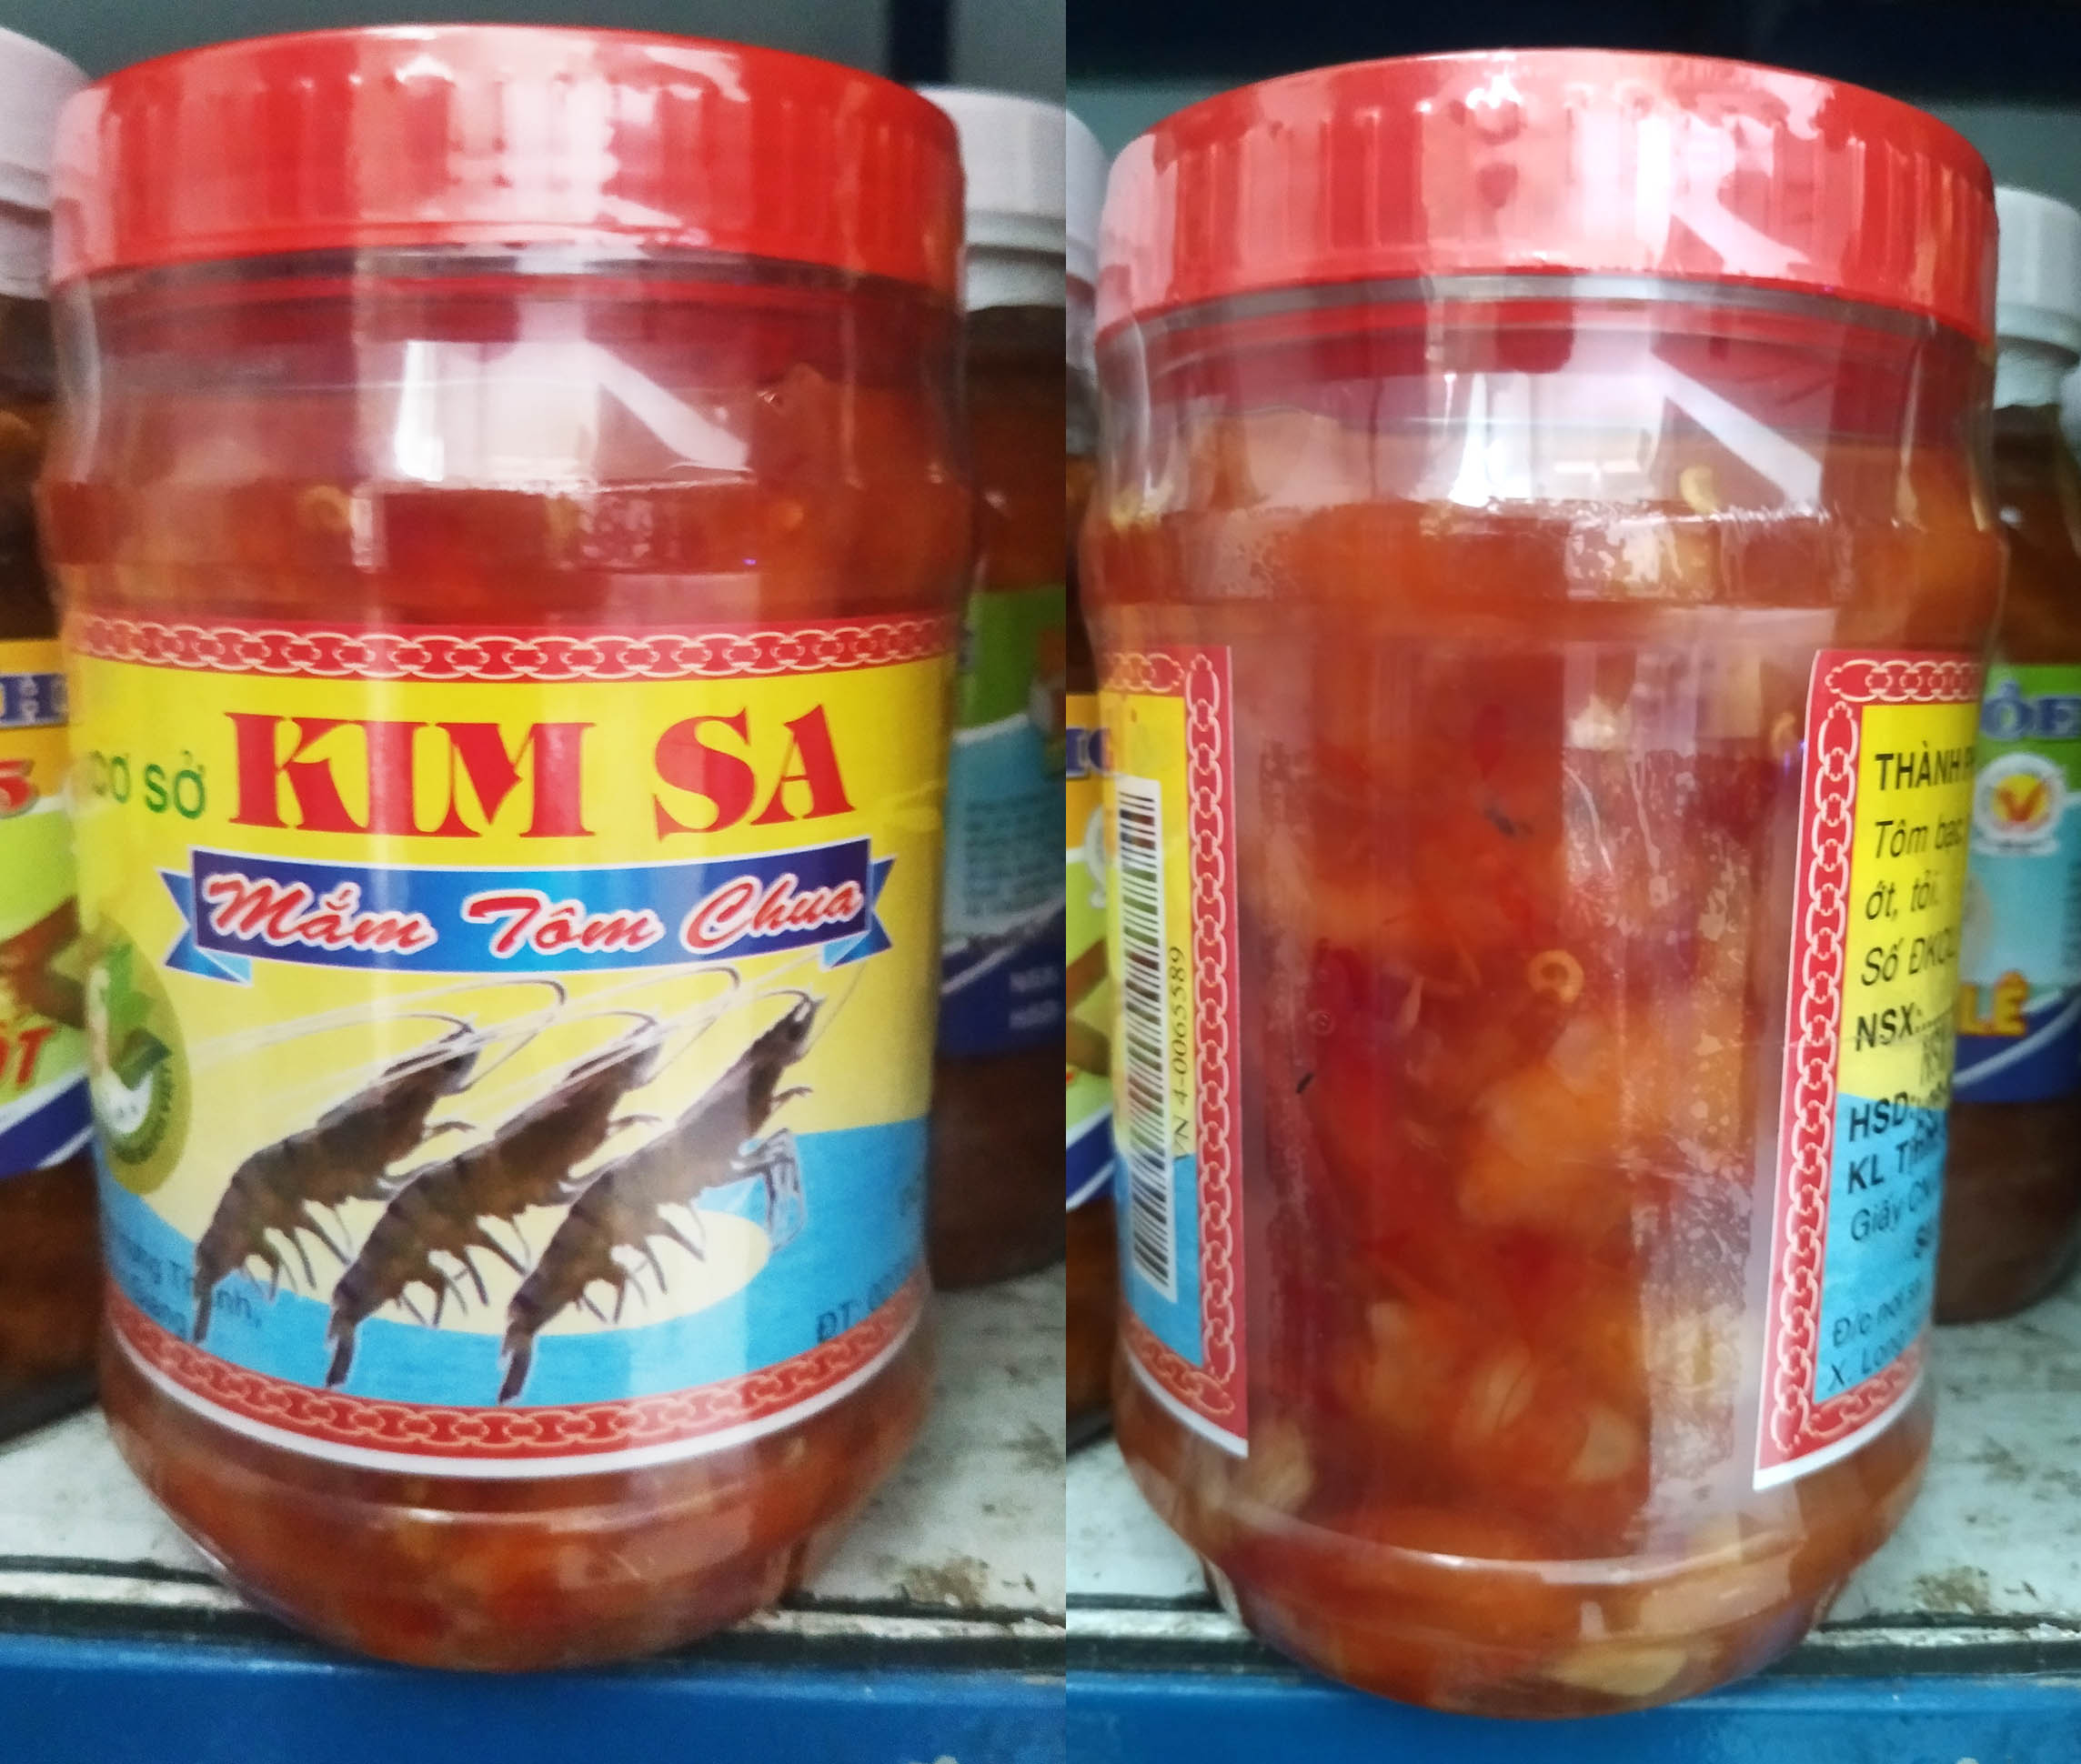 Mắm tôm chua Kim SA - tem mới